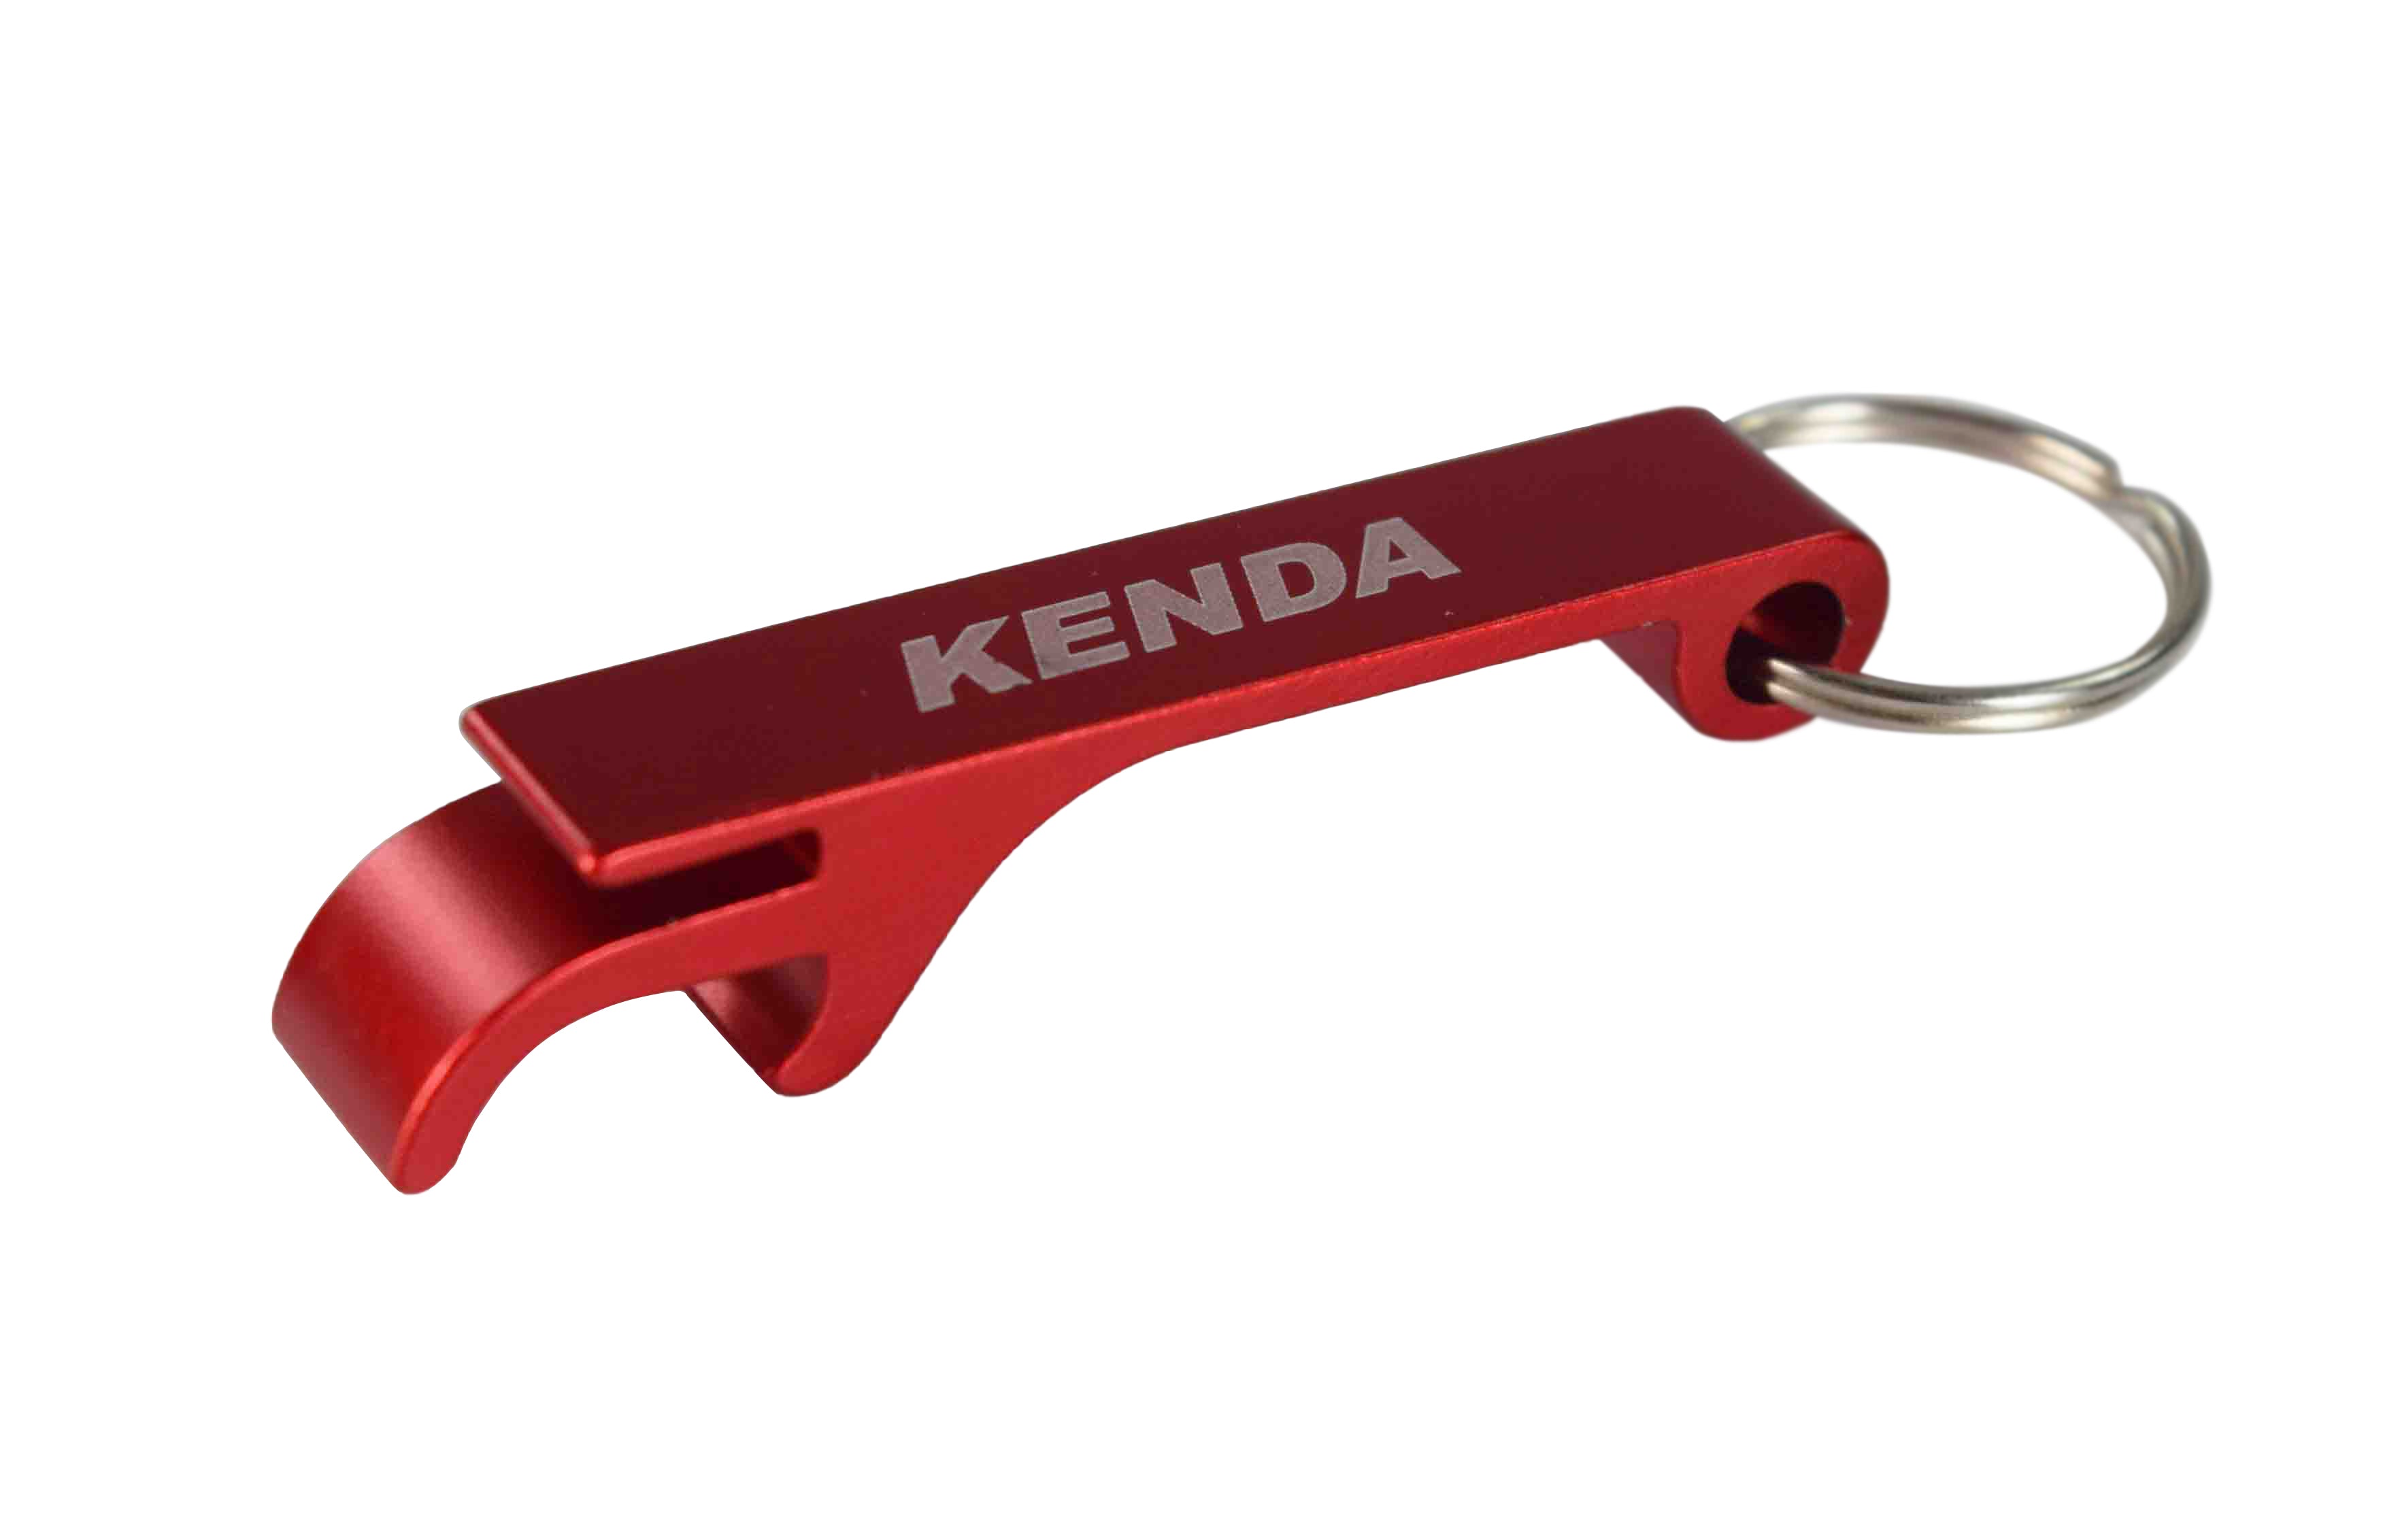 Kenda K472 22x11-10 Lawn and Garden Grasshopper Rear Tire Bottle opener keychain